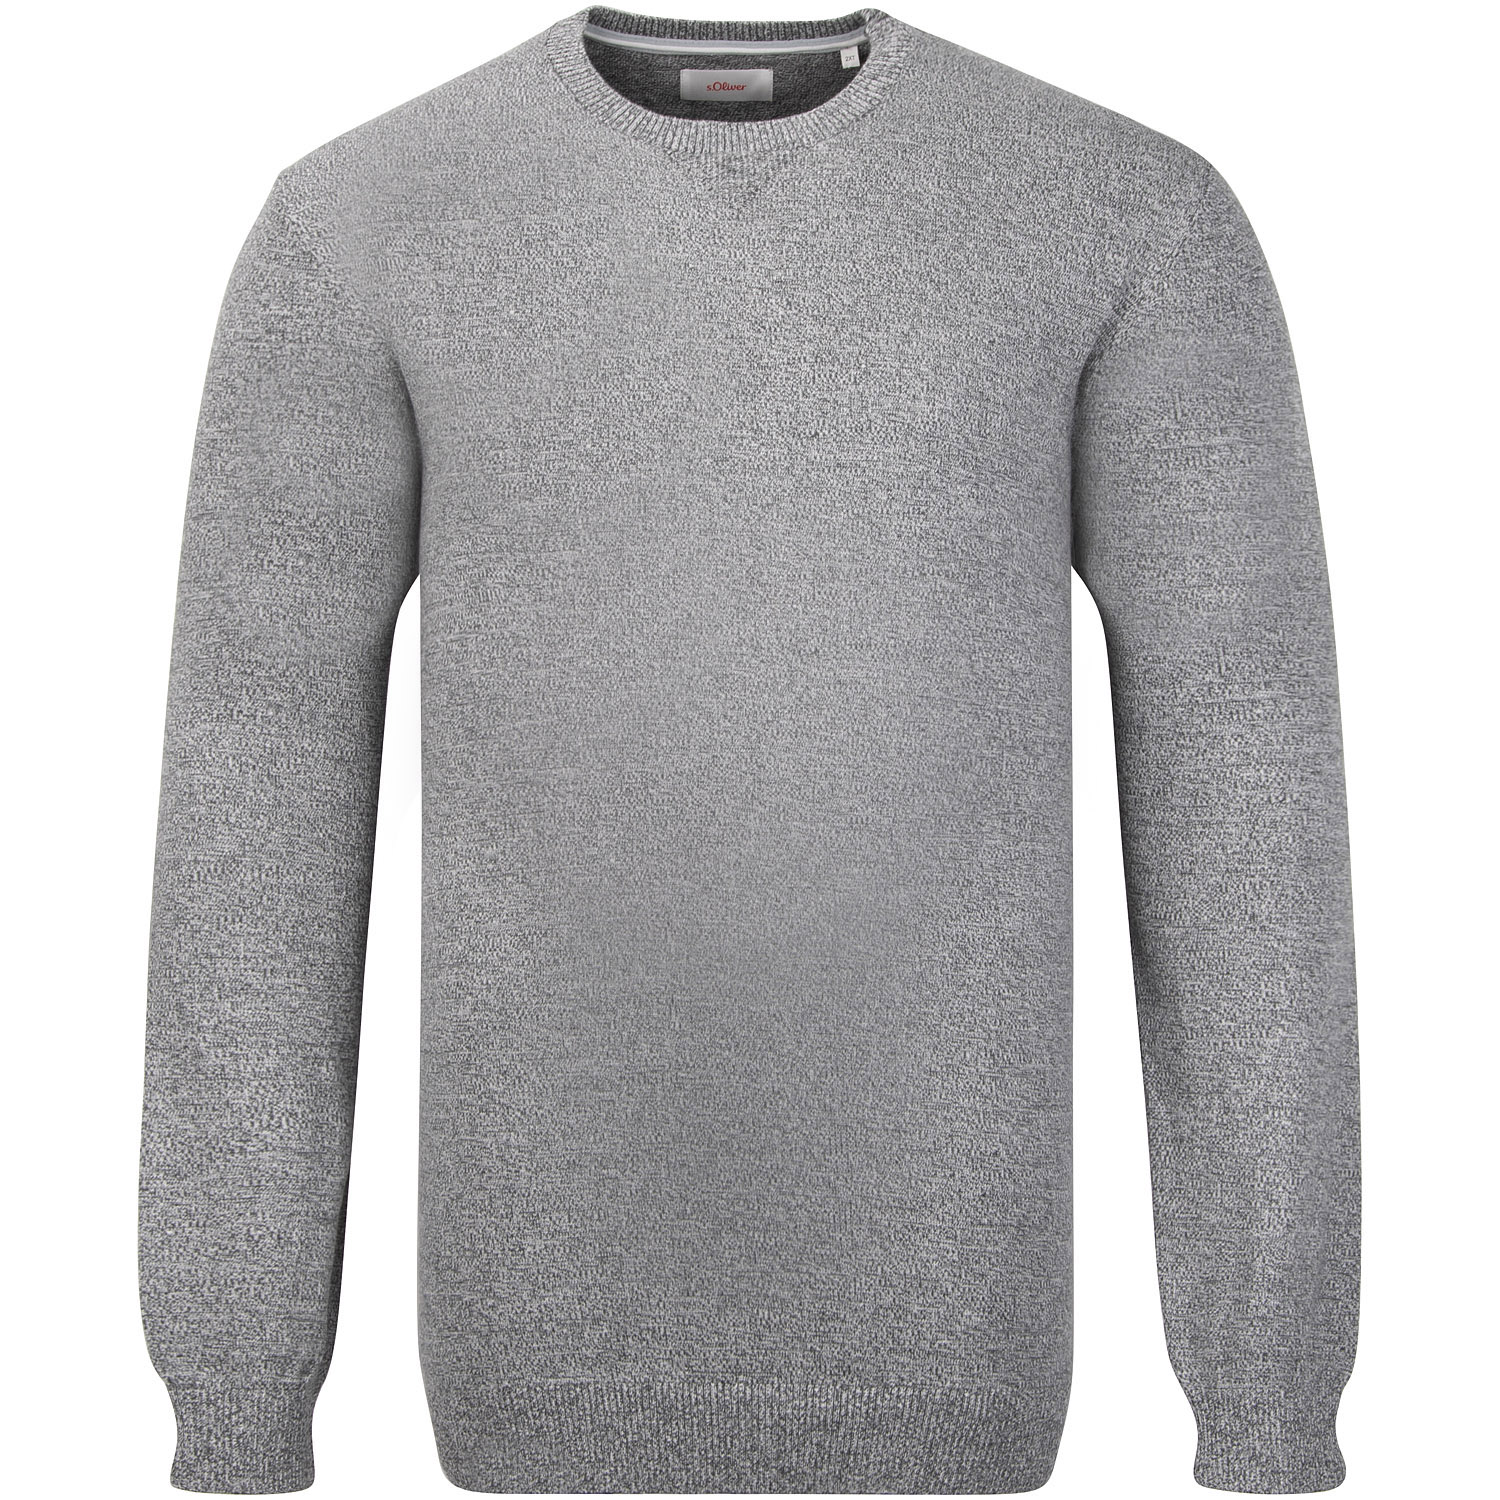 kaufen lang Übergrößen Pullover Herrenmode grau-meliert EXTRA in S.OLIVER -